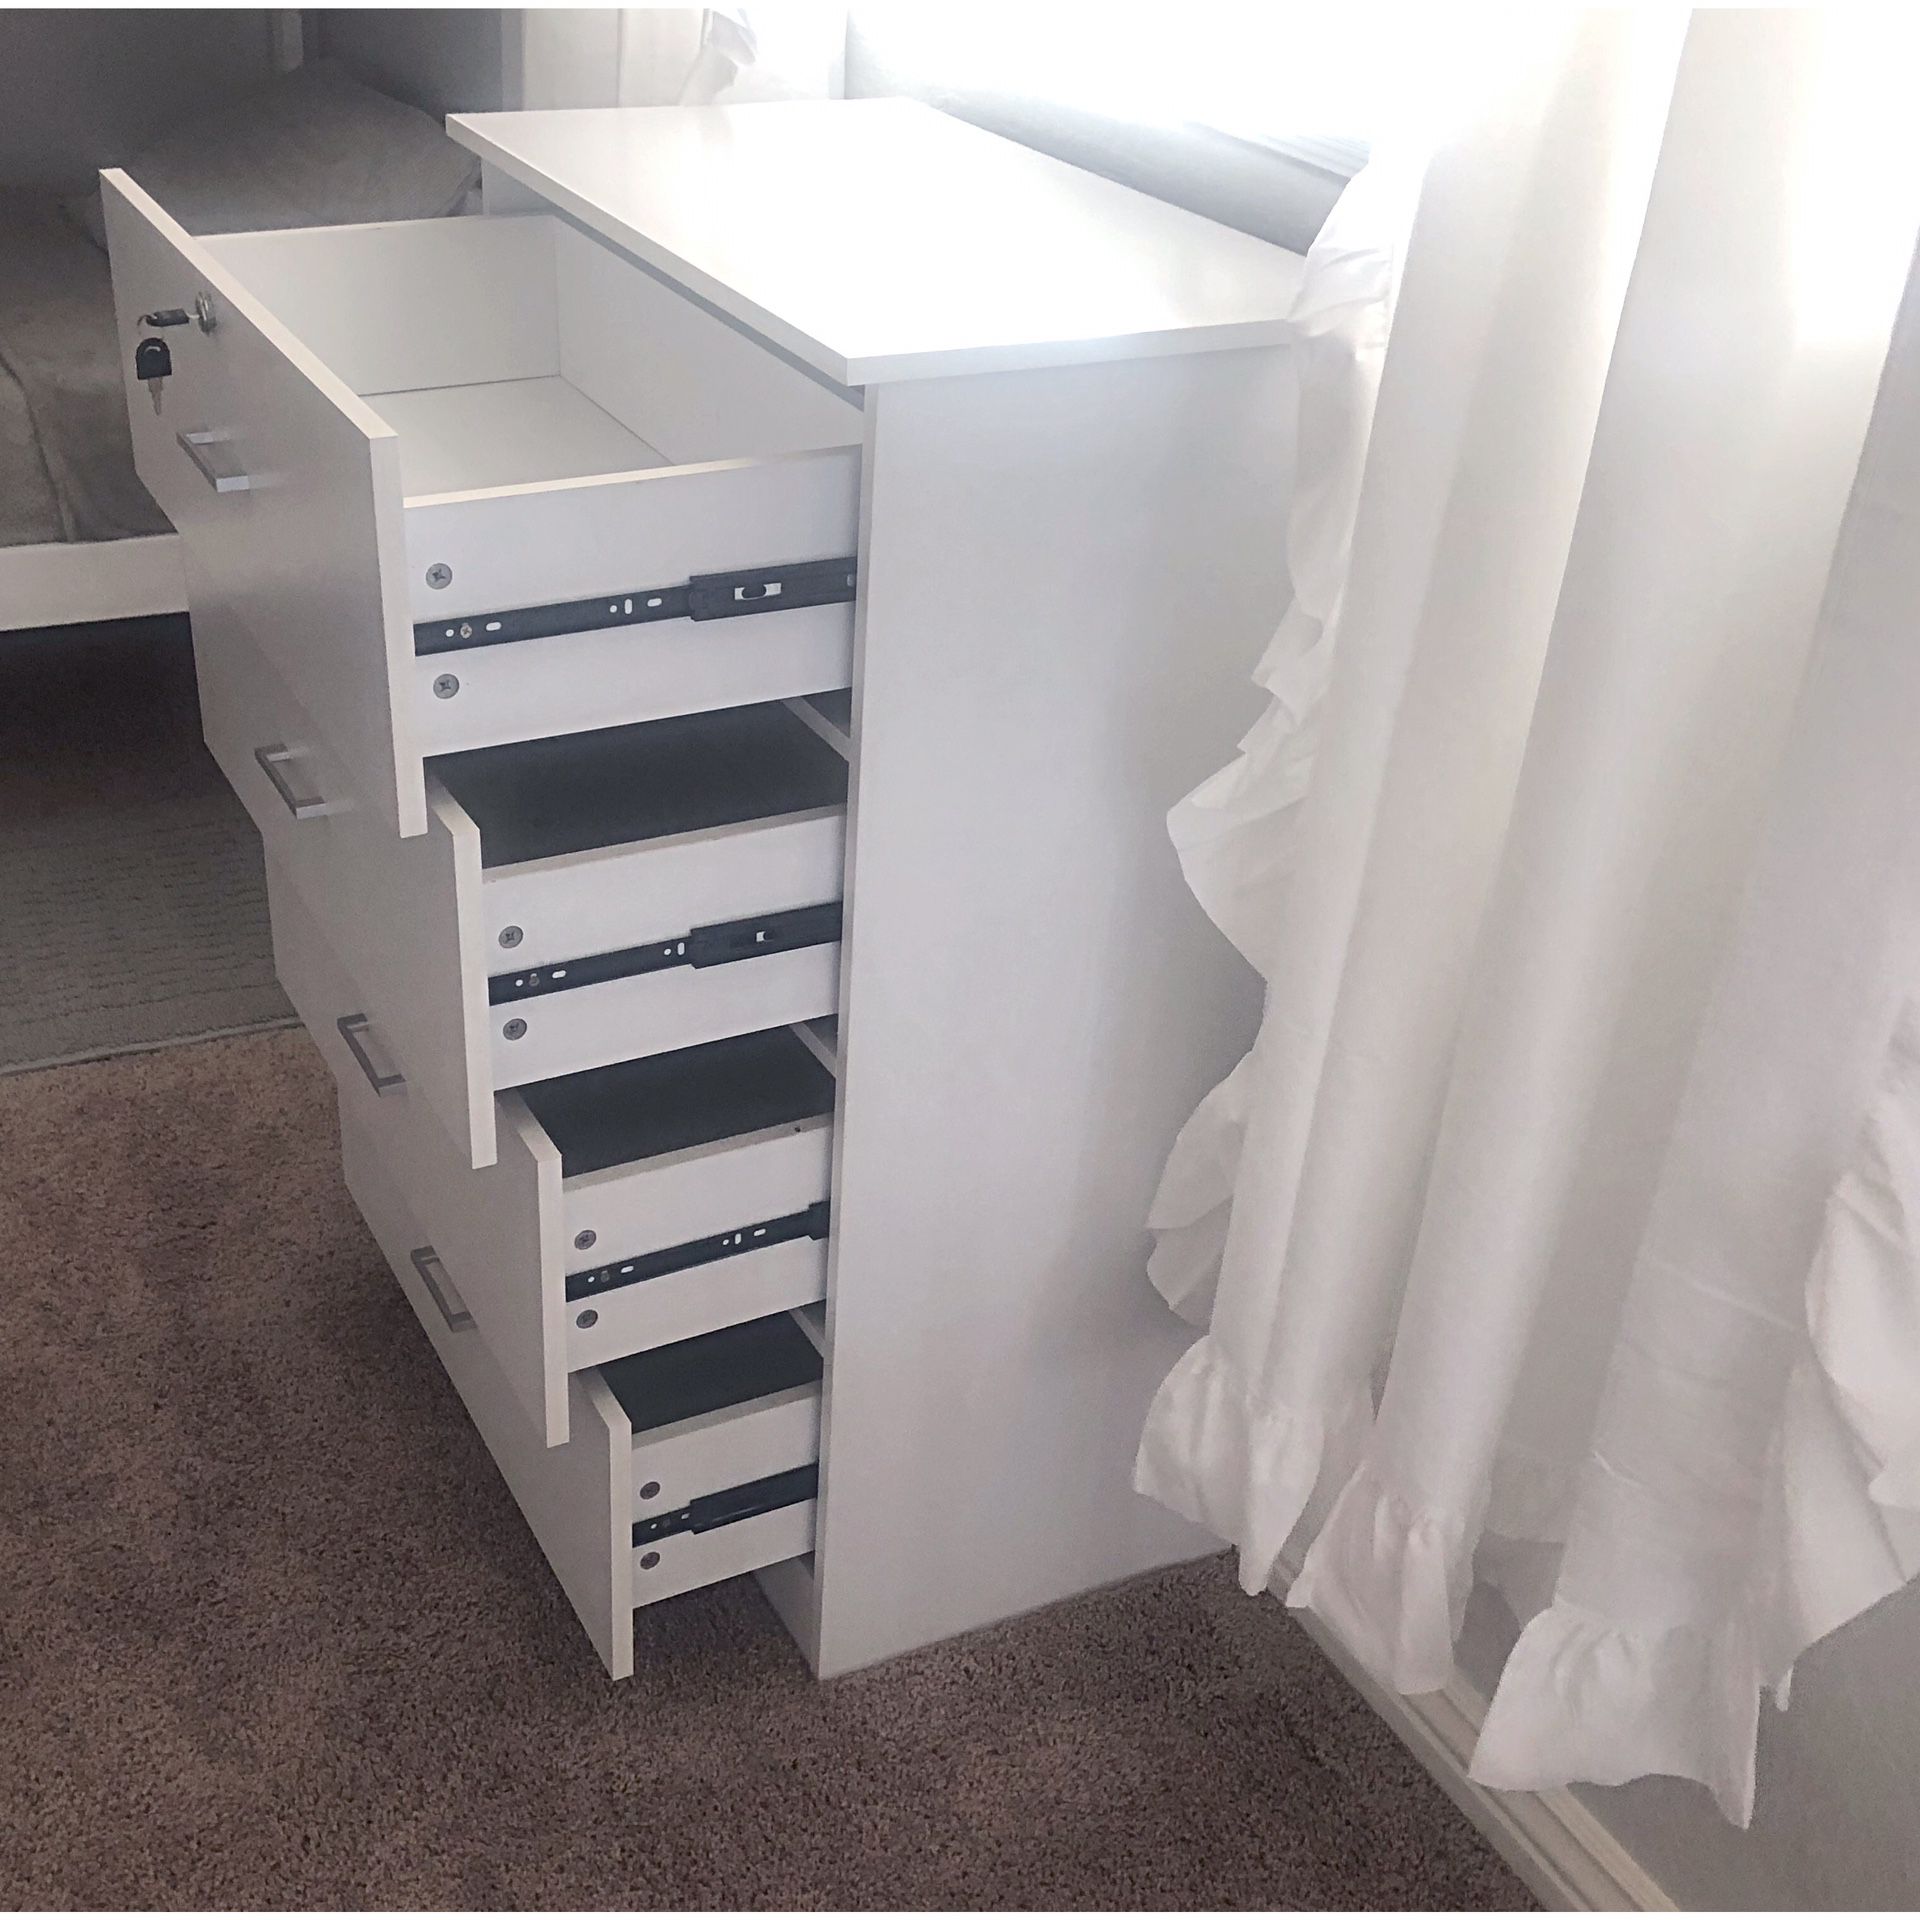 New!! Dresser, chest, wardrobe, 4 drawer tall chest, storage unit, organizer, bedroom furniture , white, dresser w lock